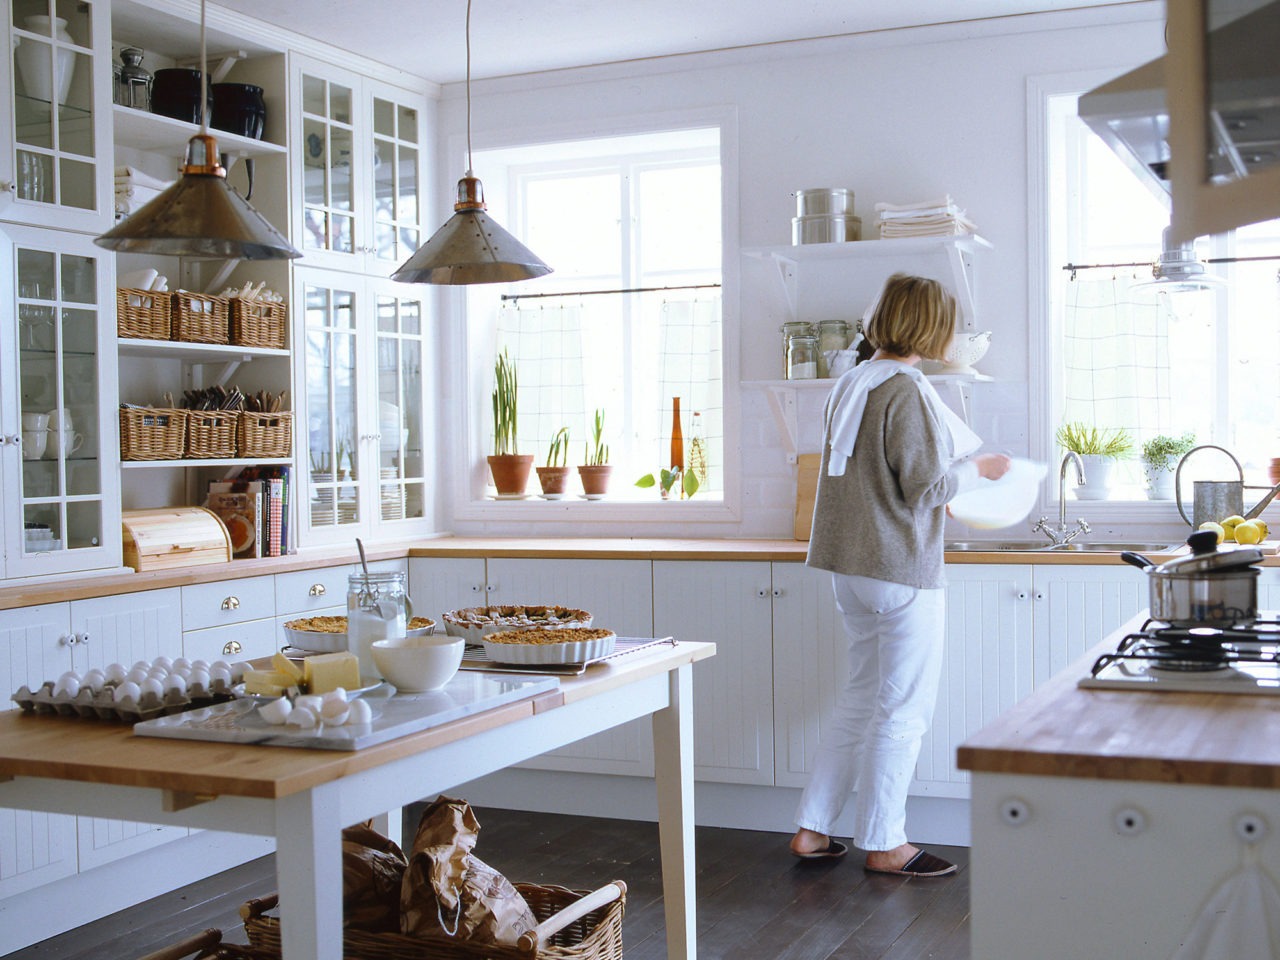 Küche mit weißen Schränken und Arbeitsfläche aus hellem Holz. Eine Frau steht an der Spüle, auf dem Esstisch stehen Kuchen.